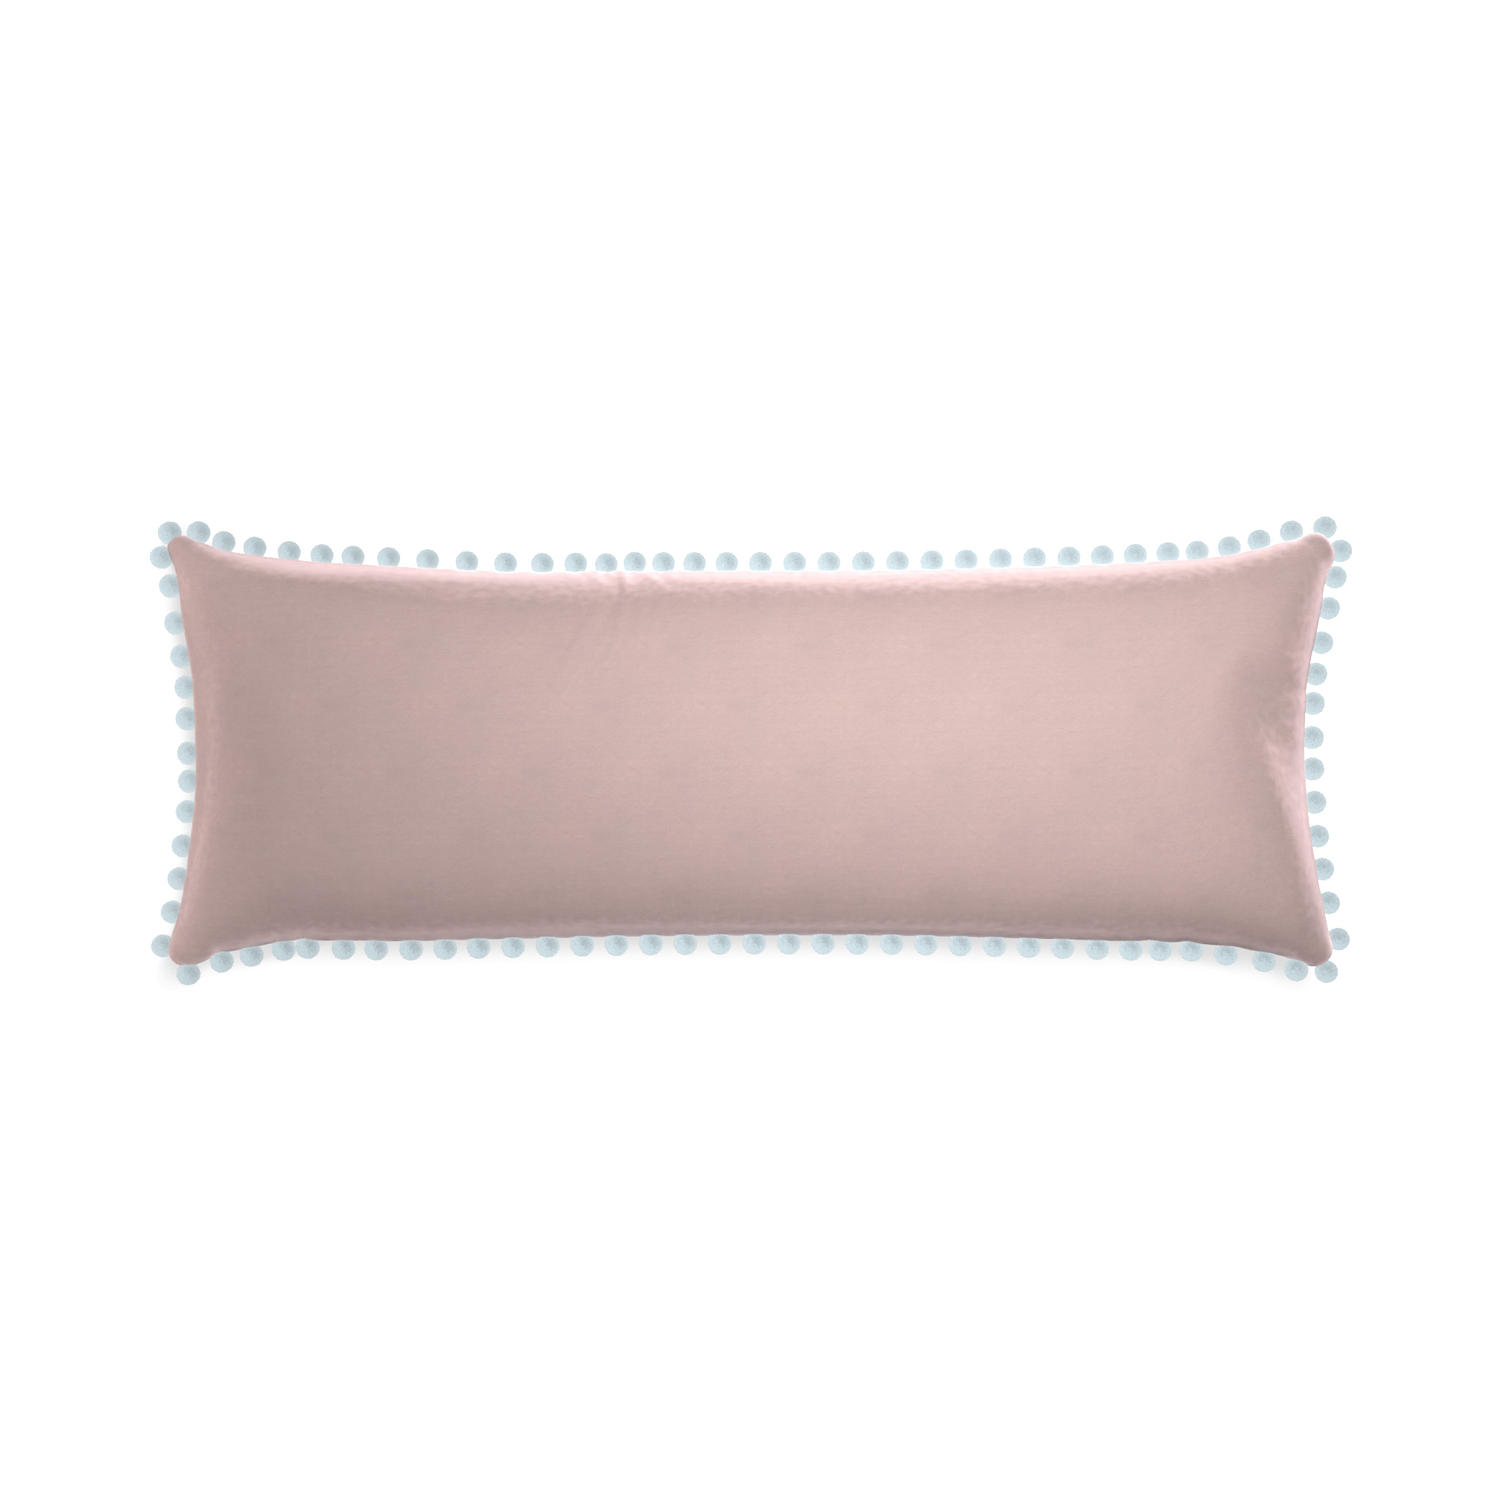 Xl-lumbar rose velvet custom pillow with powder pom pom on white background